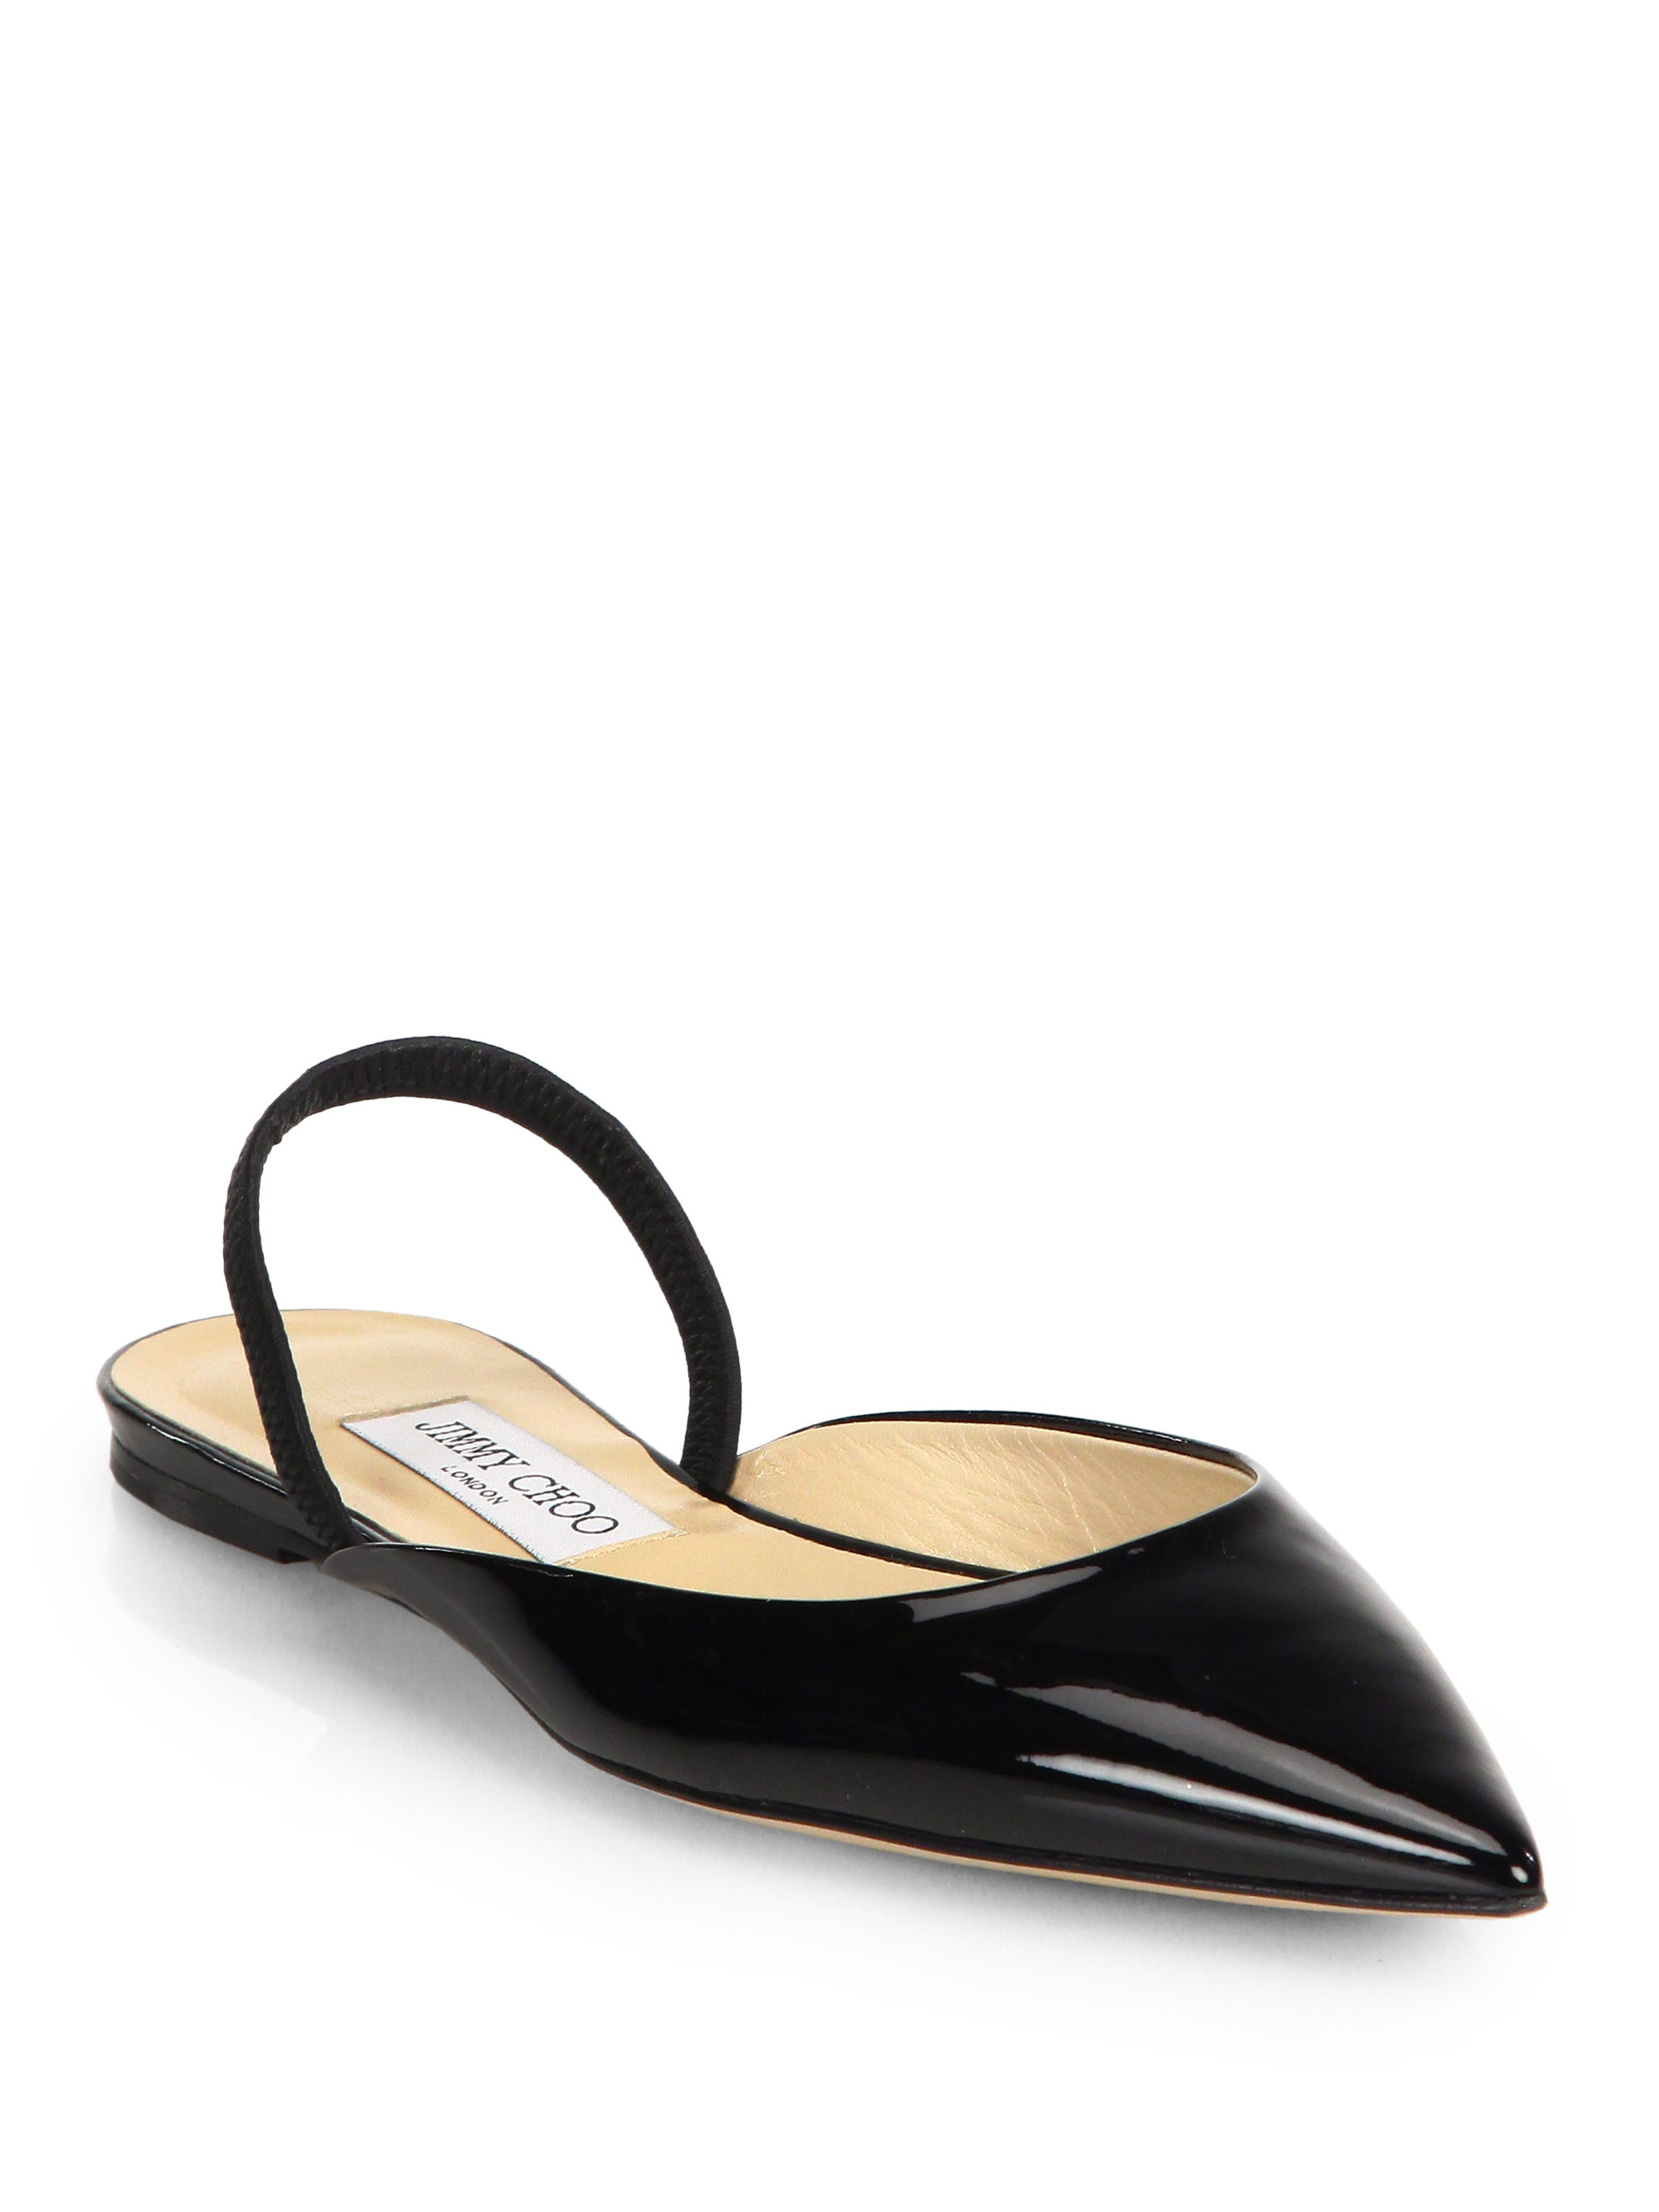 Black Patent Leather Stiletto  Small Shoes by Cristina Correia